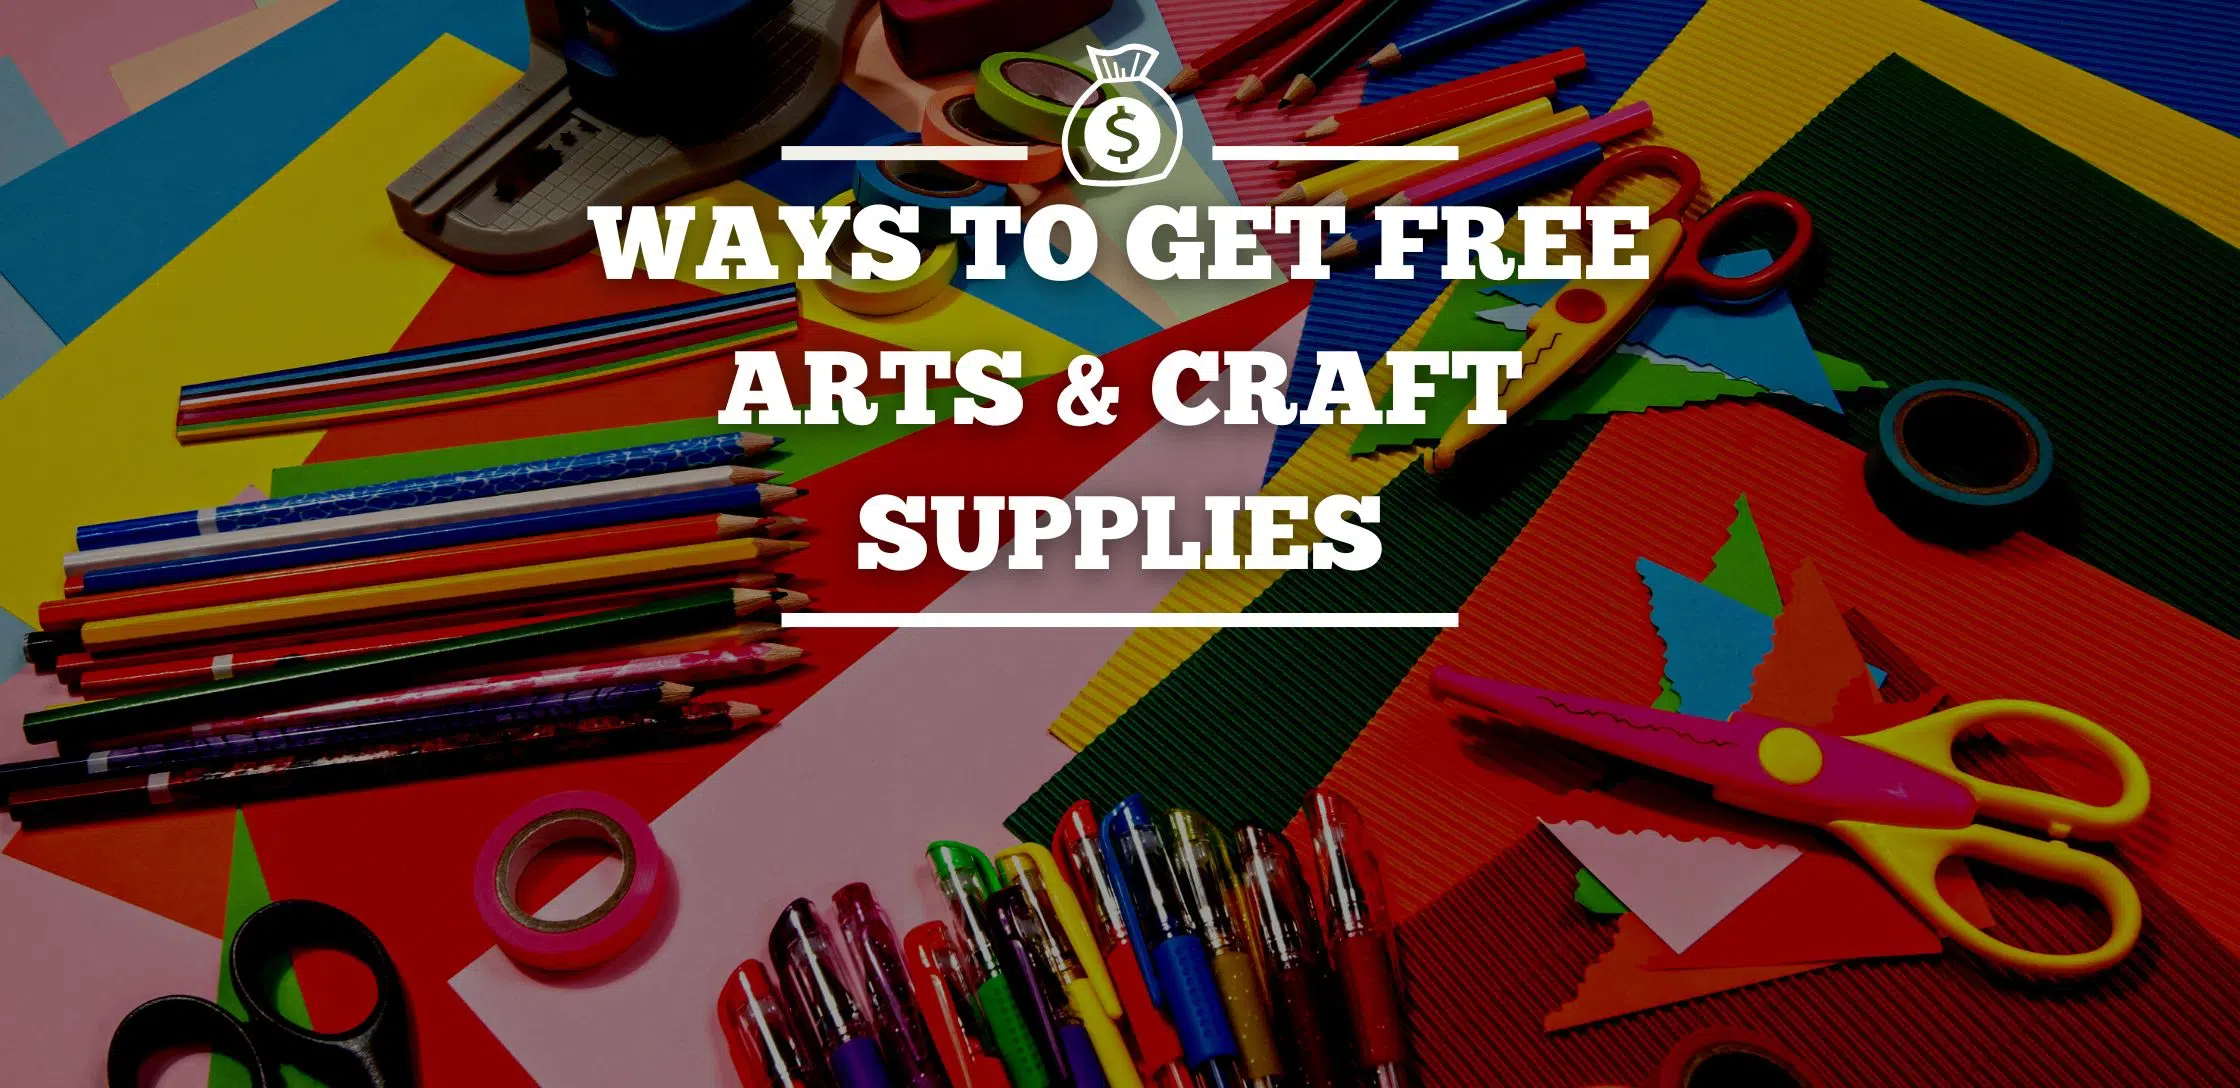 Ways To Get Free Arts & Craft Supplies